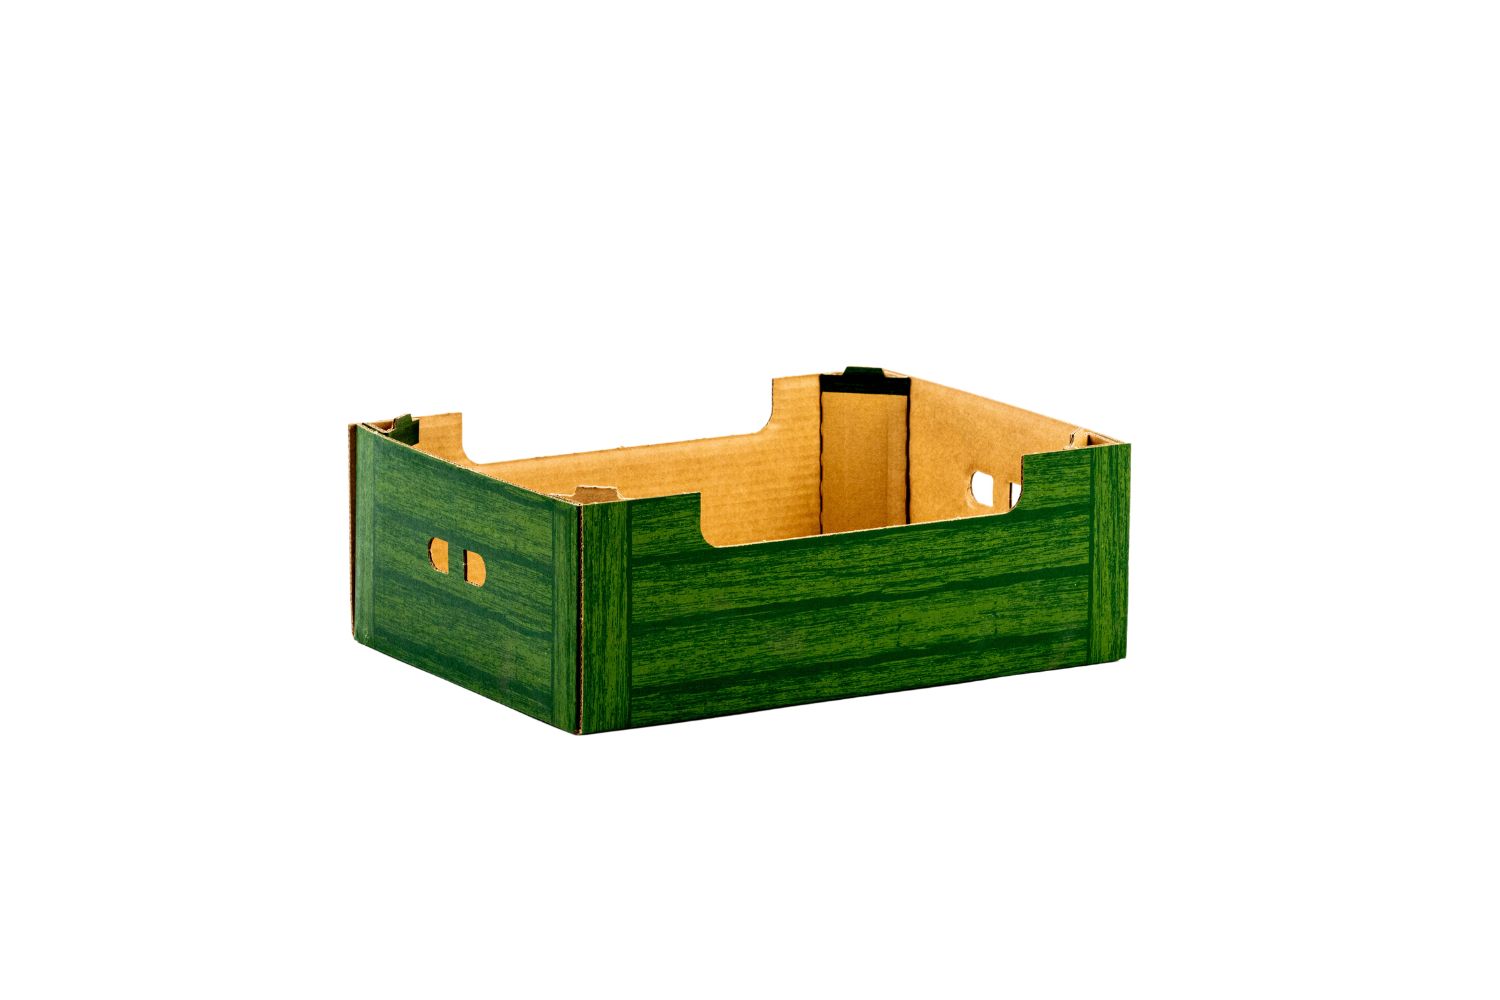 Polkarton Bęza kartony karton 6kg zielona deska kartony grójec warka błędów biała rawska producent kartonów karton 6 kg opakowania tekturowe